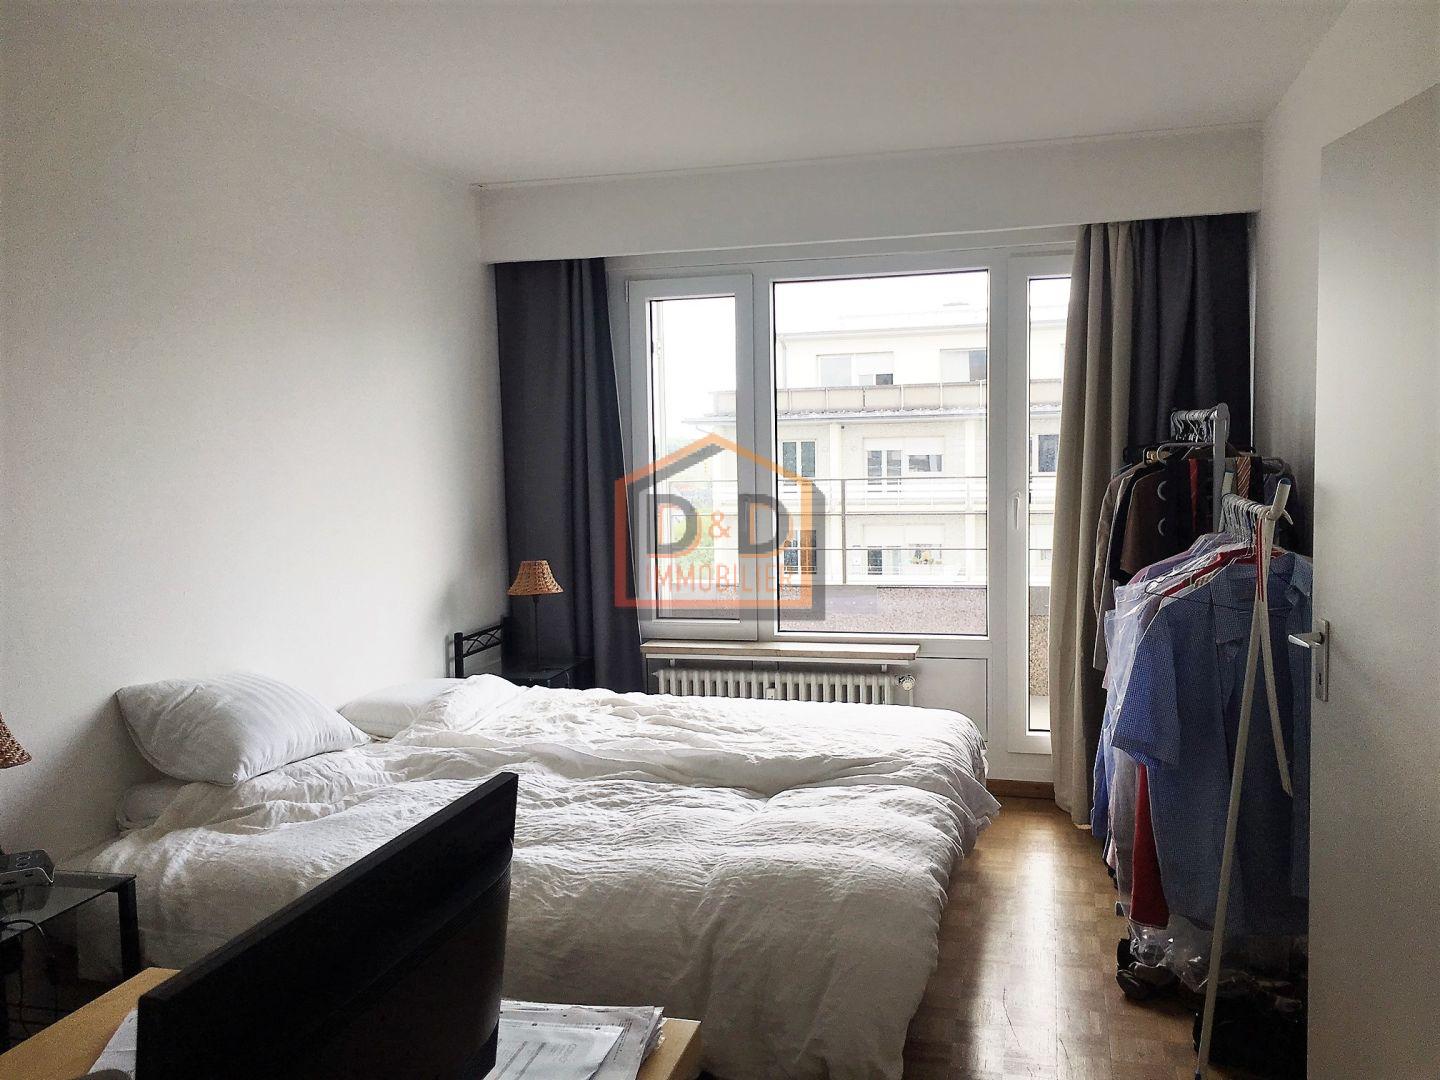 Appartement à Luxembourg-Bonnevoie, 70 m², 2 chambres, 1 salle de bain, 1 700 €/mois